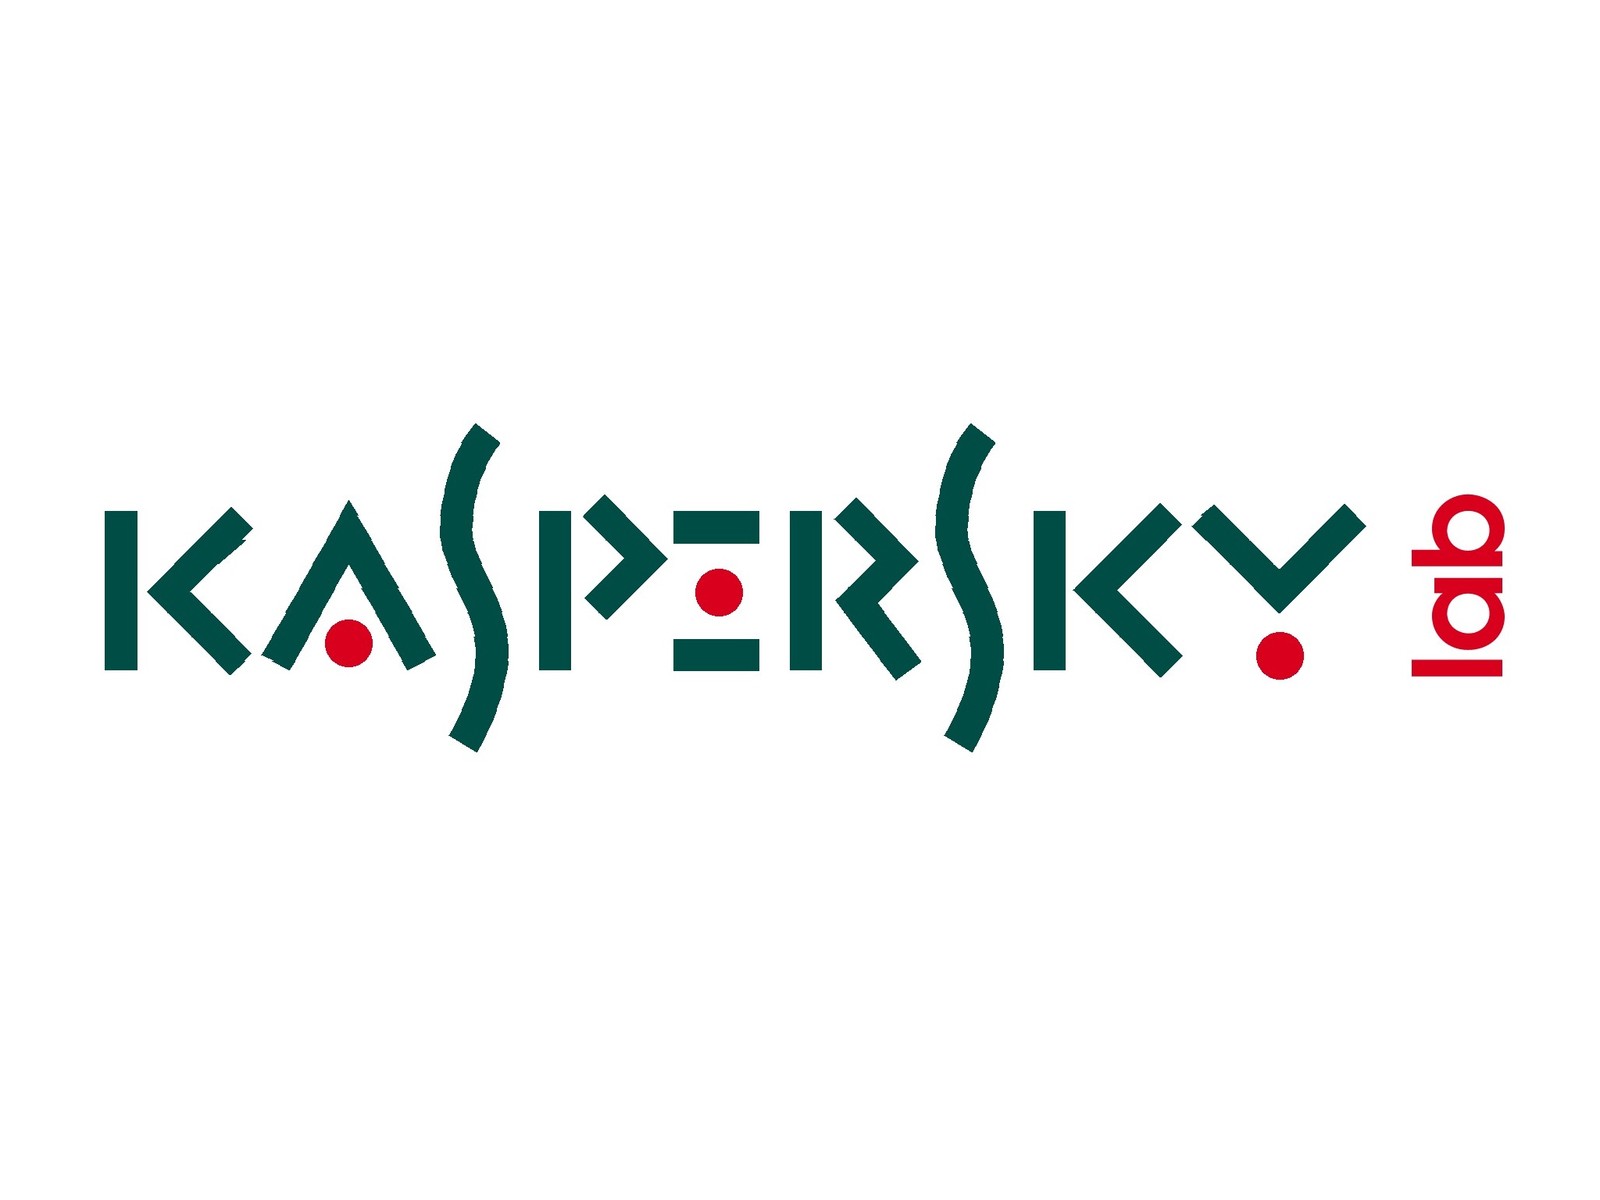 Hungarian Gov't Bans Kaspersky Lab